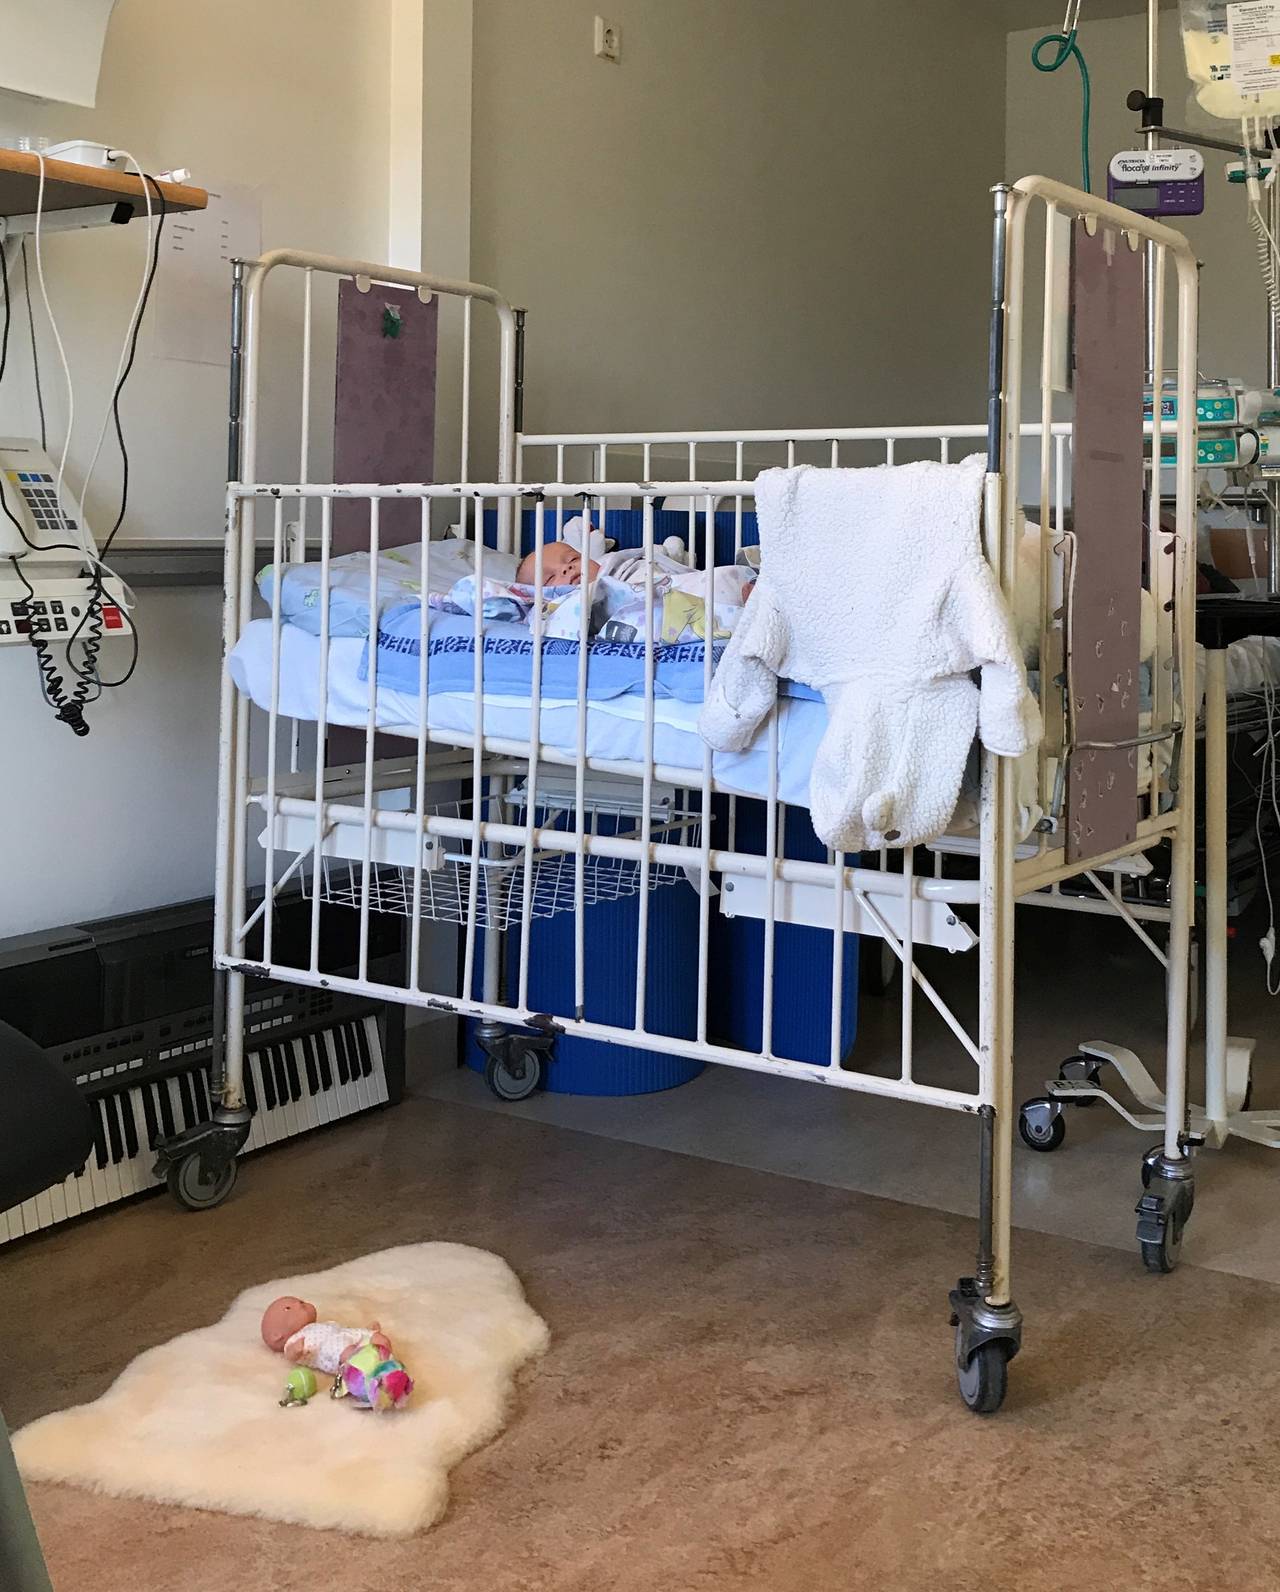 Sonia Victoria nel suo letto d'ospedale.  La bambola sul pavimento è l'unica cosa che indica che la stanza appartiene a un bambino.